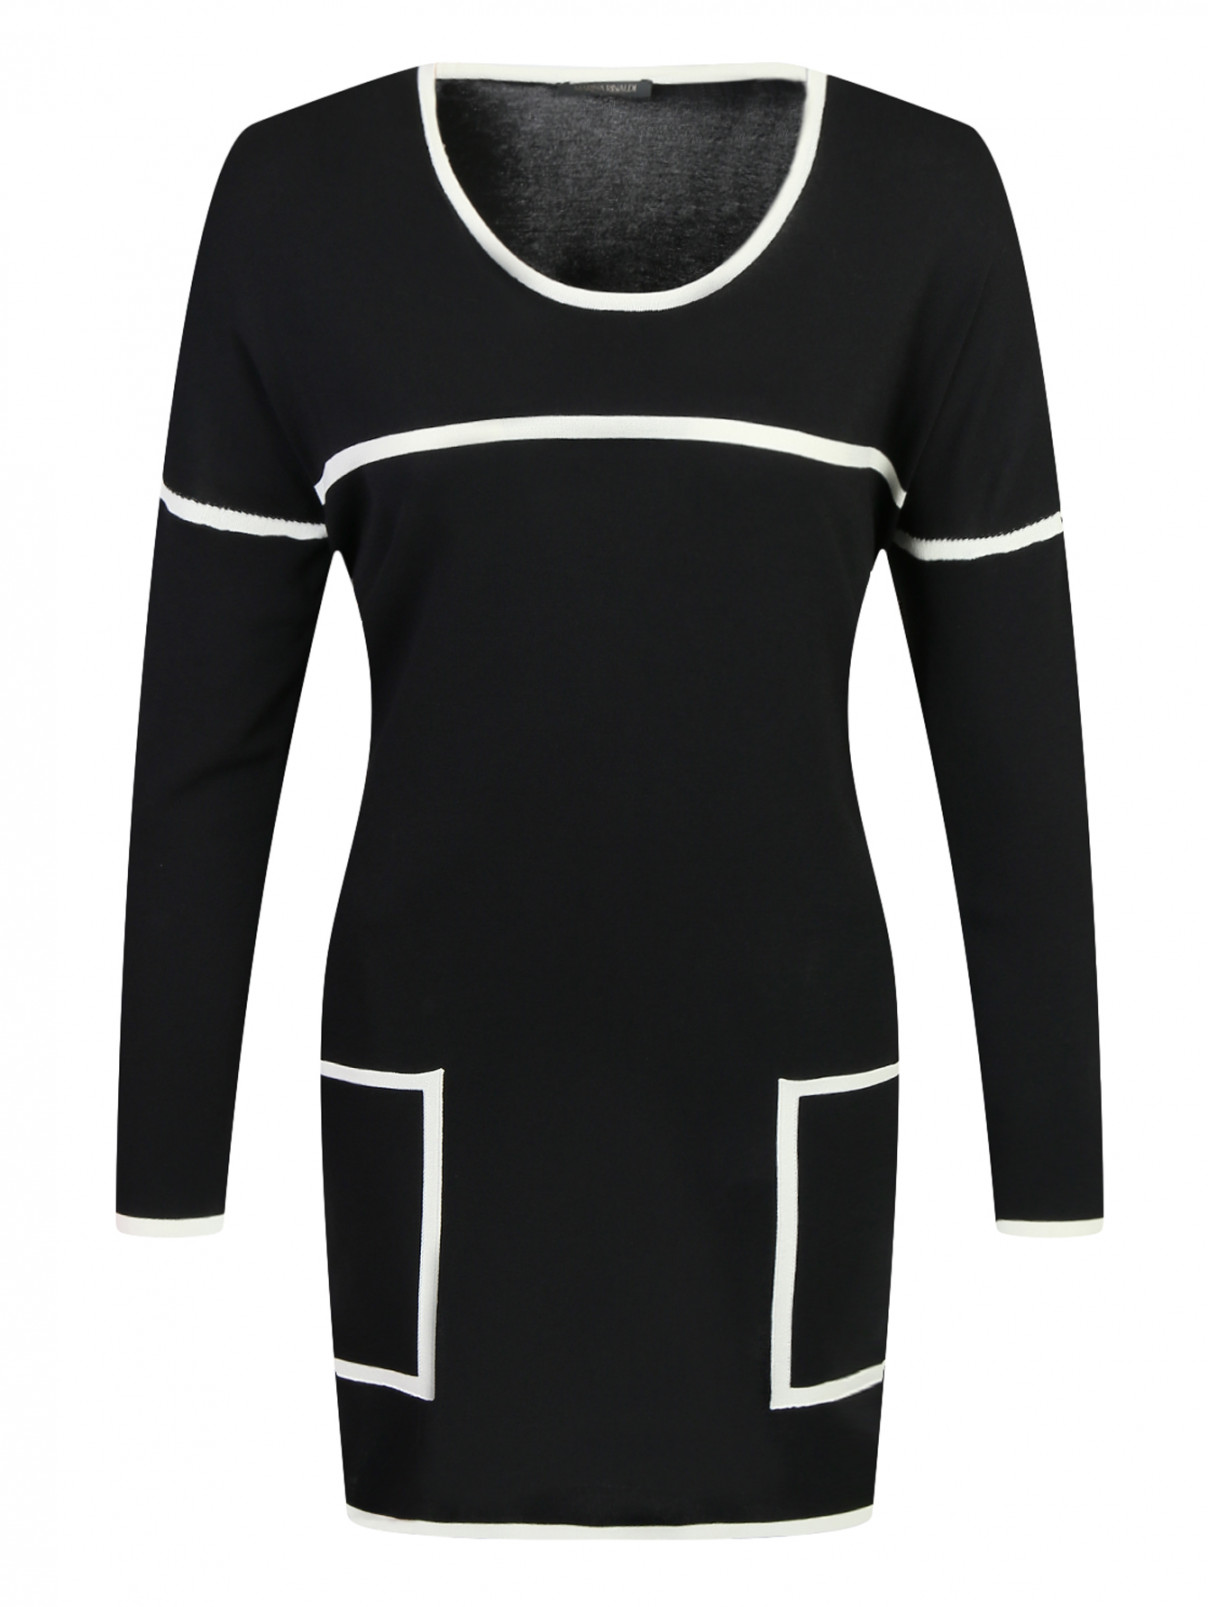 Джемпер с контрастной отделкой и накладными карманами Marina Rinaldi  –  Общий вид  – Цвет:  Черный